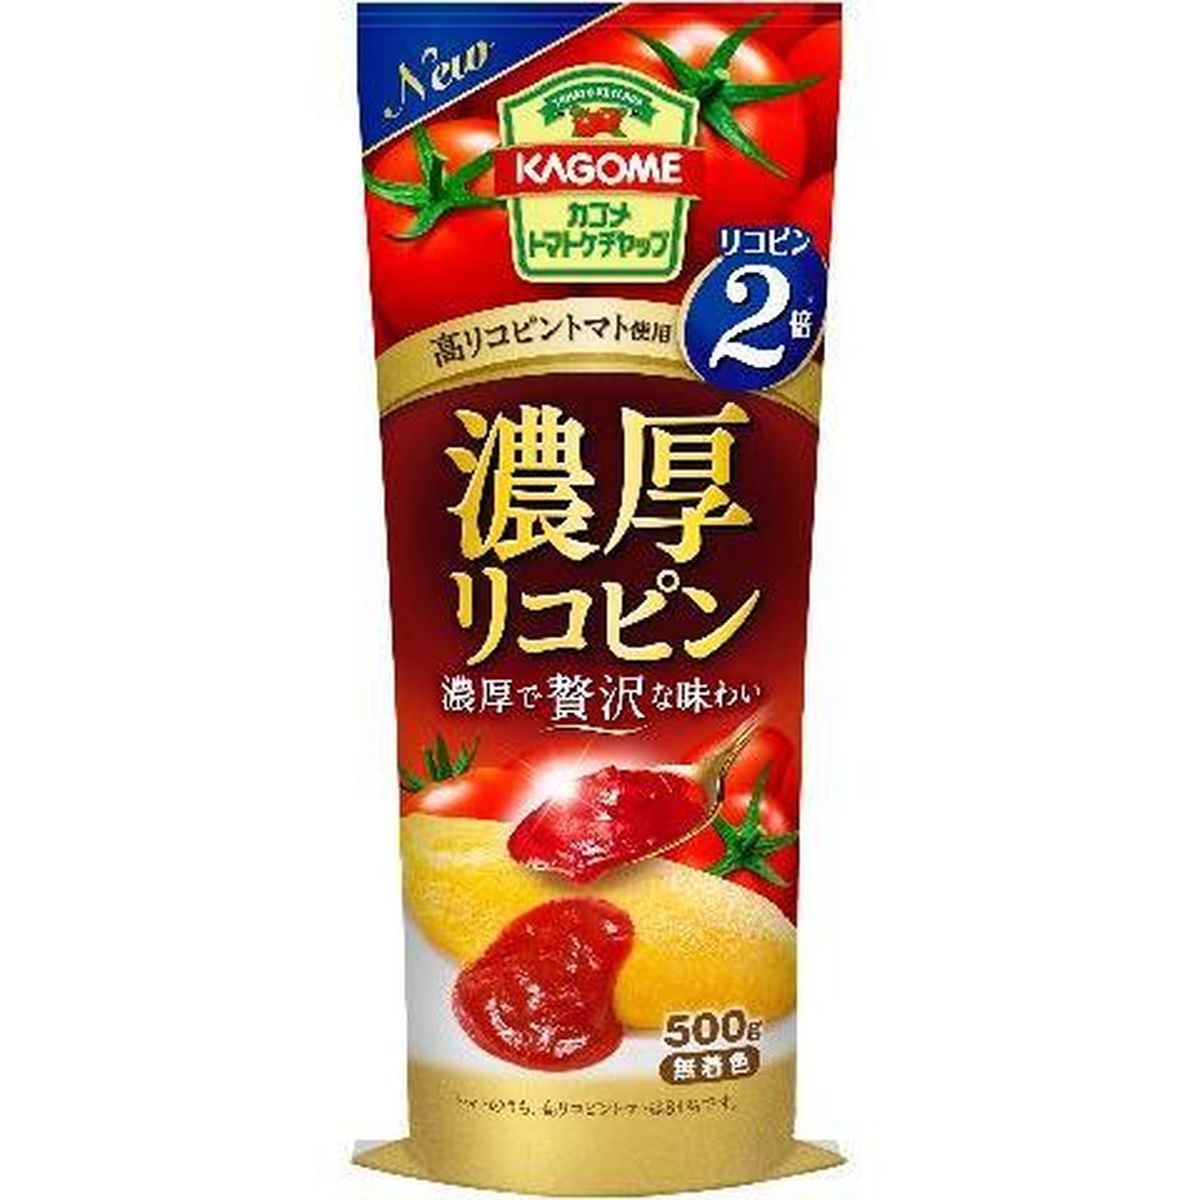 【20個入リ】カゴメ 濃厚リコピン トマトケチャップ 500g